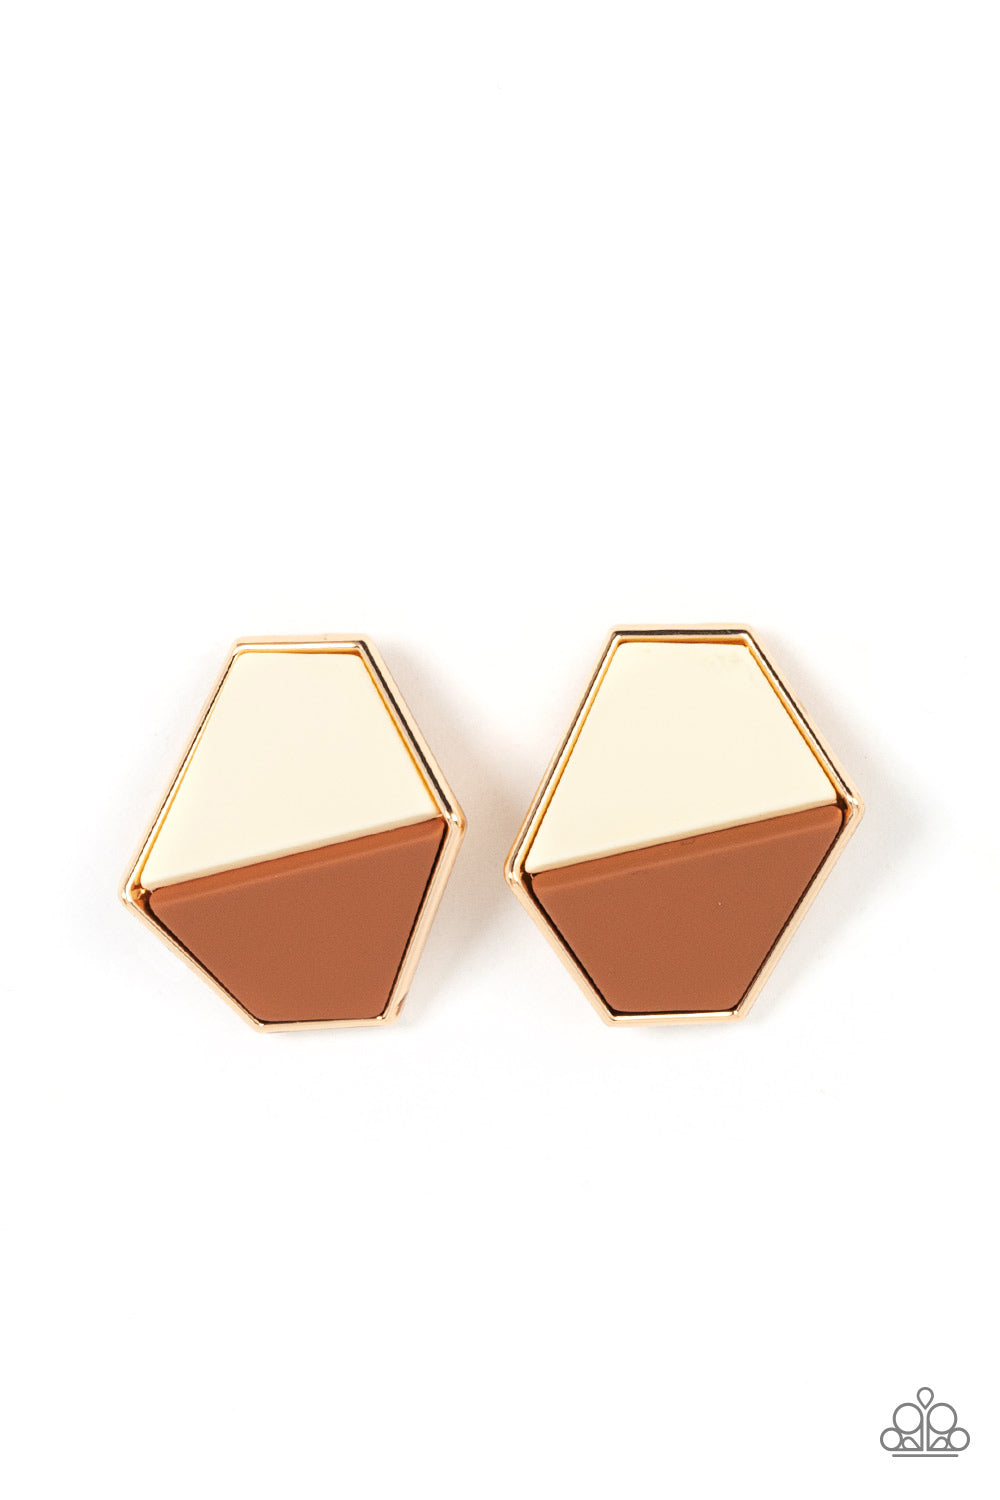 Generically Geometric - Brown Stud Earrings